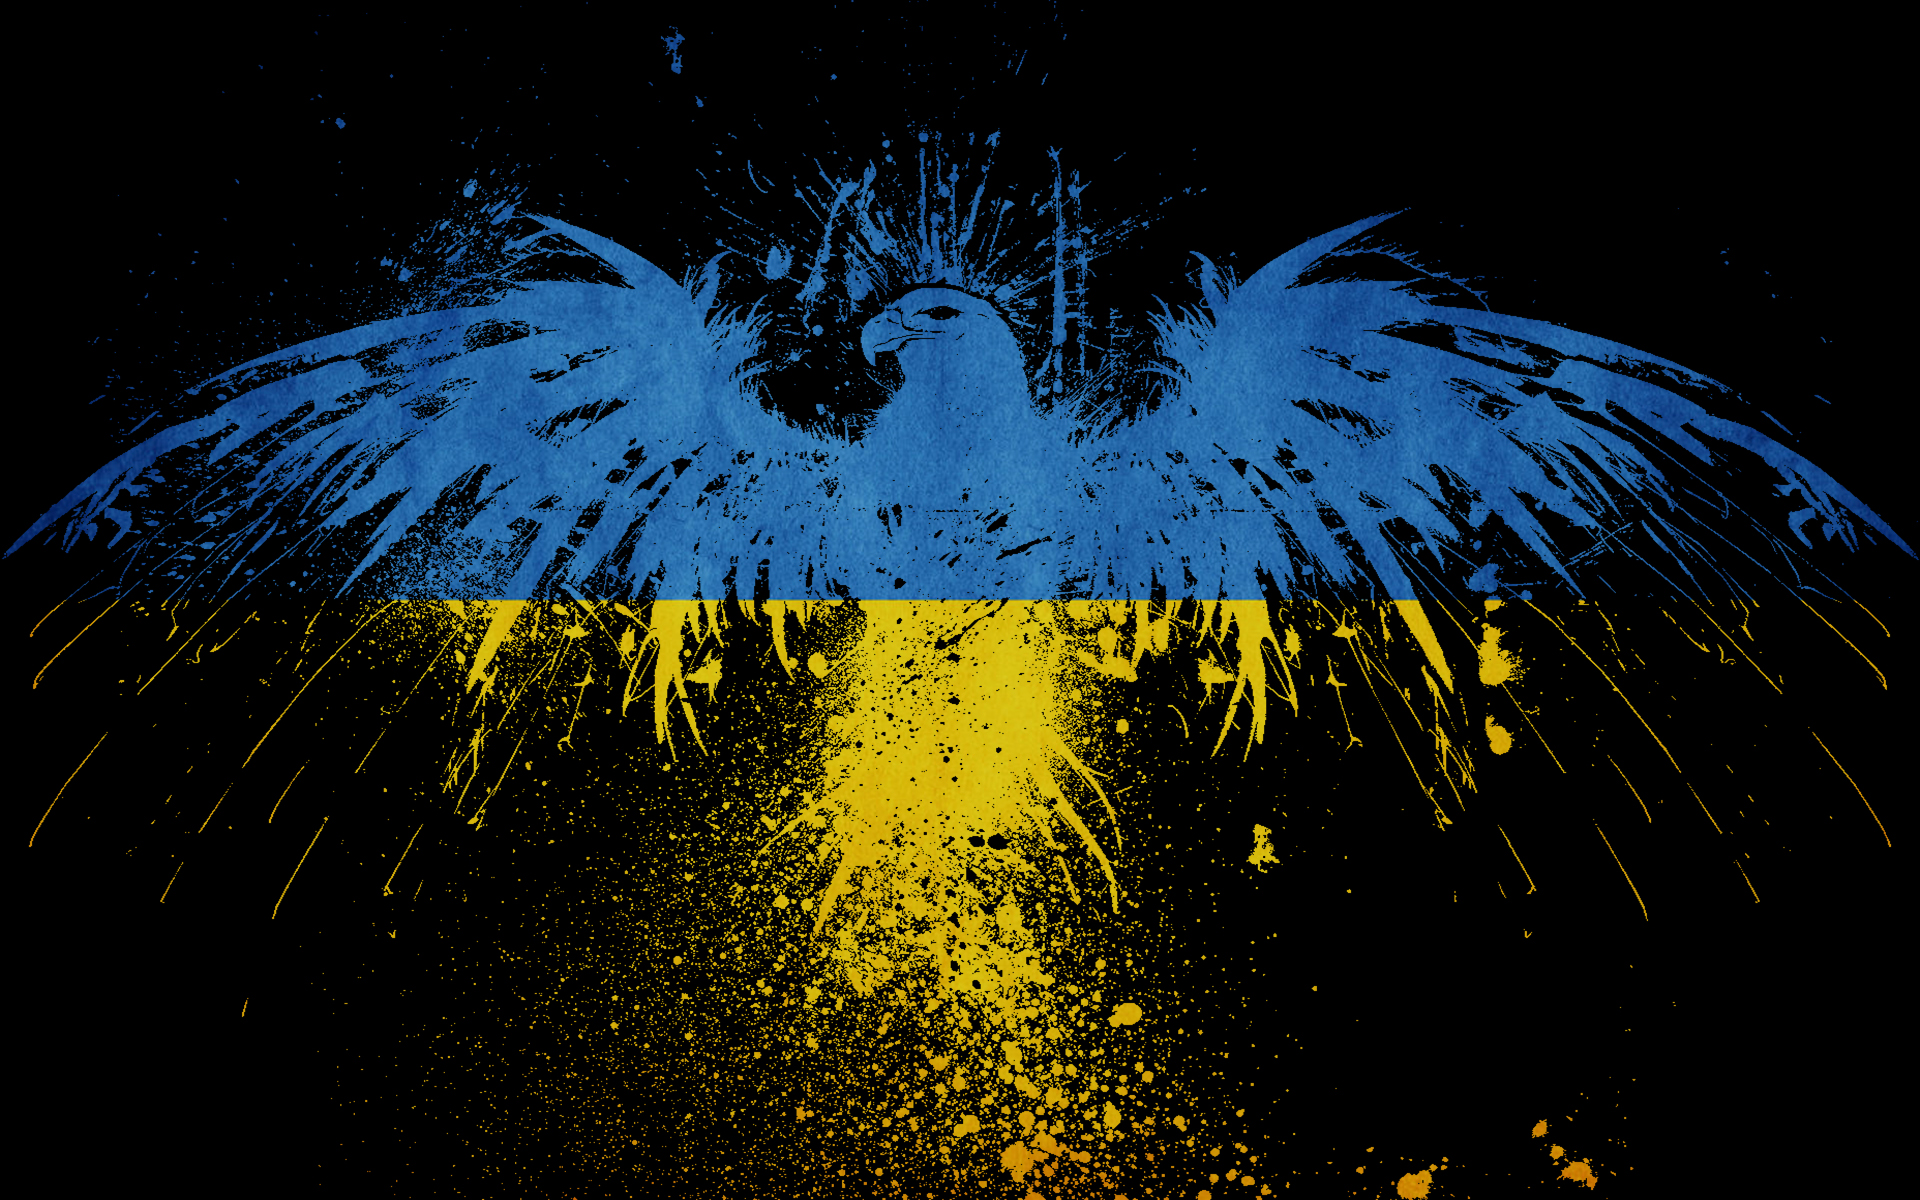 Cờ Ukraine: Tự hào và đầy quyết tâm, cờ Ukraine là niềm tự hào cho người dân đất nước này. Bạn có muốn biết thêm về ý nghĩa và lịch sử của cờ Ukraine qua hình ảnh tuyệt đẹp không?